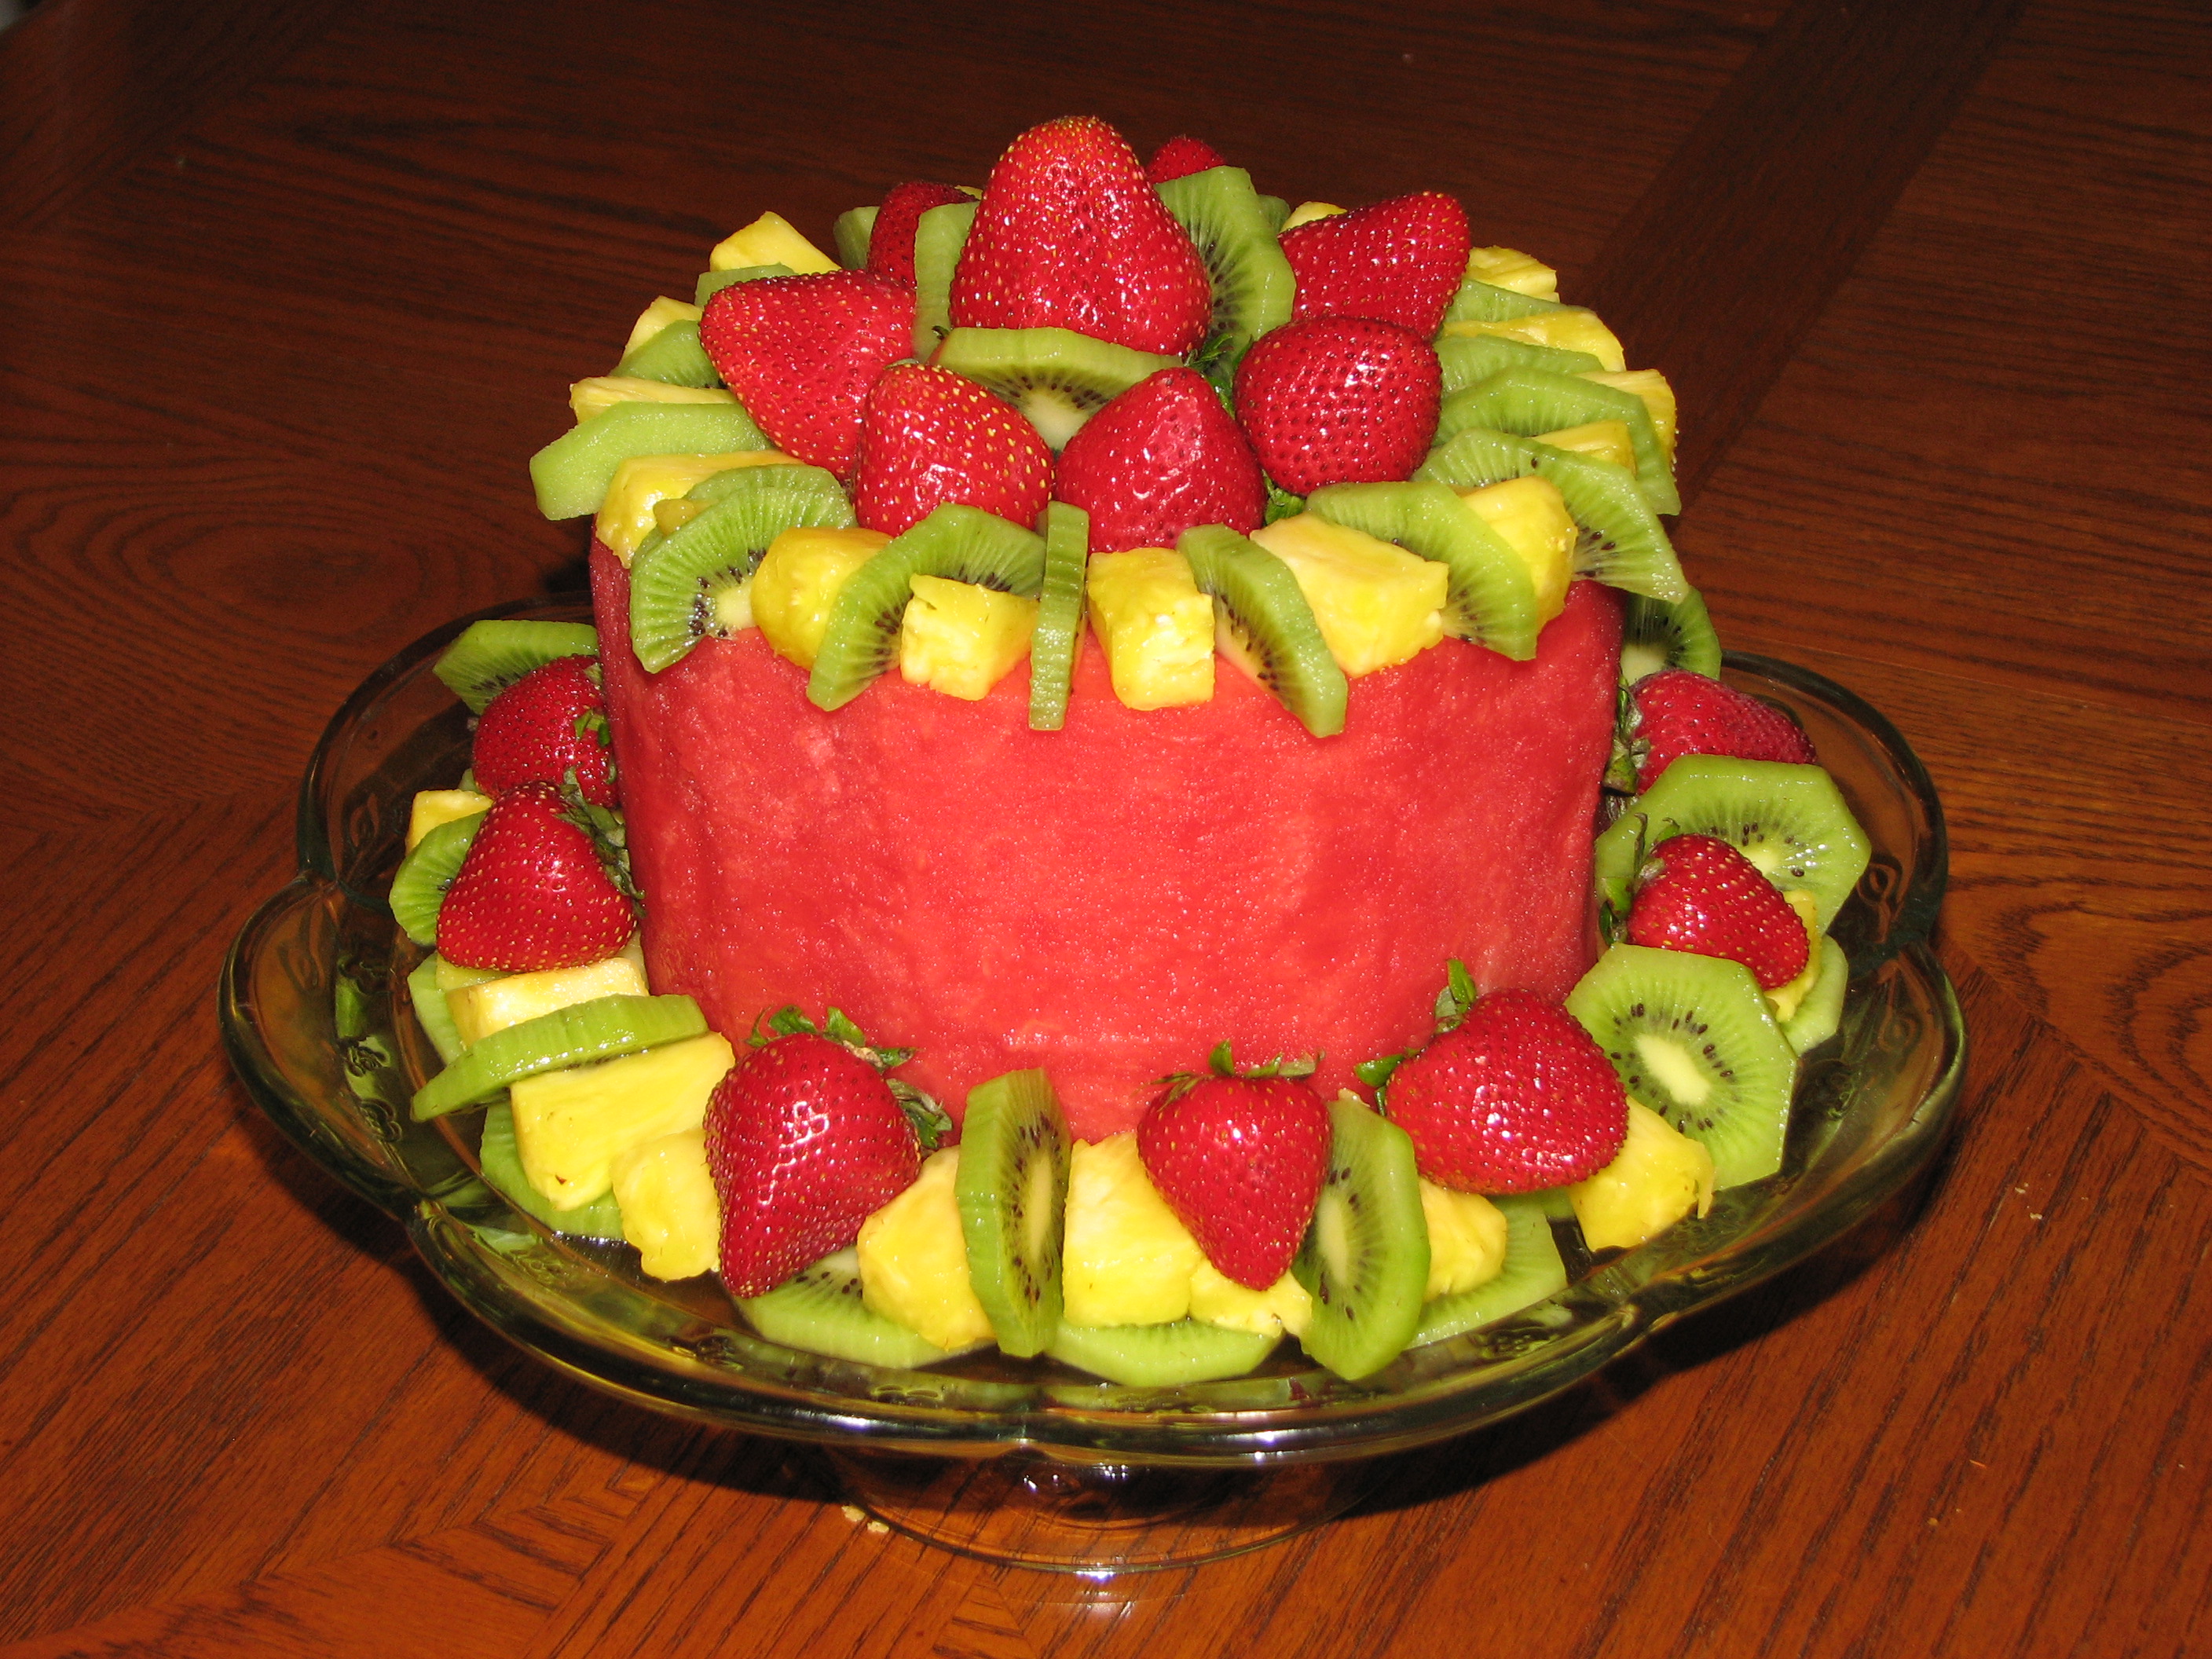 Выложить фрукты в виде торта